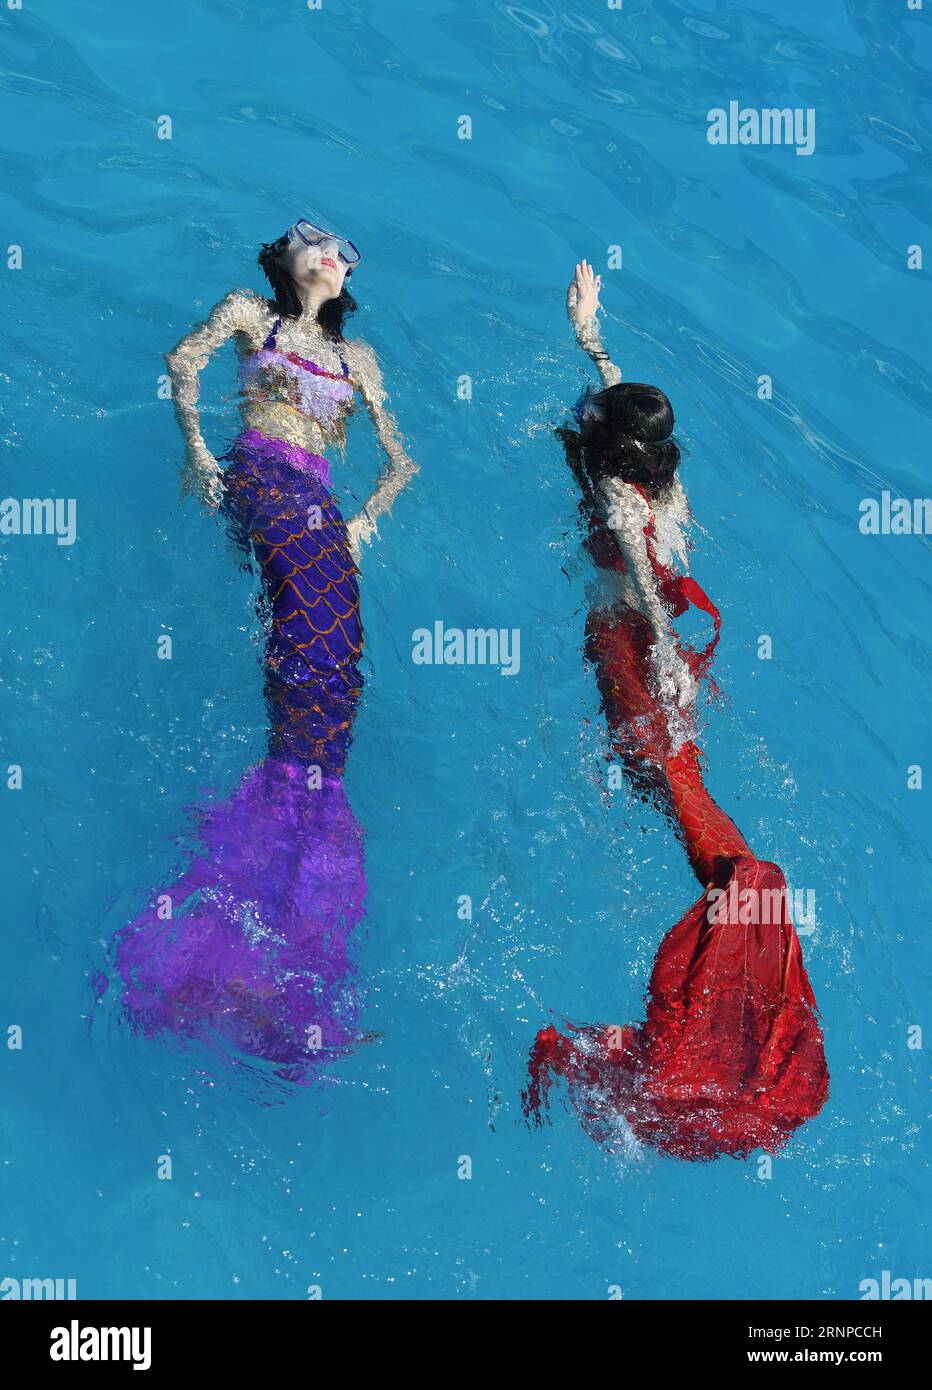 (170822) -- CHONGQING, 22 août 2017 -- les touristes nagent avec la queue de sirène au parc aquatique Yangrenjie à Chongqing, dans le sud-ouest de la Chine, le 22 août 2017. La température la plus élevée était de plus de 40 degrés Celsius dans de nombreuses parties de la municipalité de Chongqing mardi. (wsw) CHINE-CHONGQING-HAUTE TEMPÉRATURE (CN) WangxQuanchao PUBLICATIONxNOTxINxCHN Chongqing août 22 2017 touristes nagez avec des queues de sirène AU parc aquatique Yangrenjie à Chongqing Sud-Ouest de la Chine août 22 2017 la température la plus élevée s'élevait À plus de 40 degrés Celsius dans DE NOMBREUSES parties DE la municipalité de Chongqing LE mardi WSW Chine Chong Banque D'Images